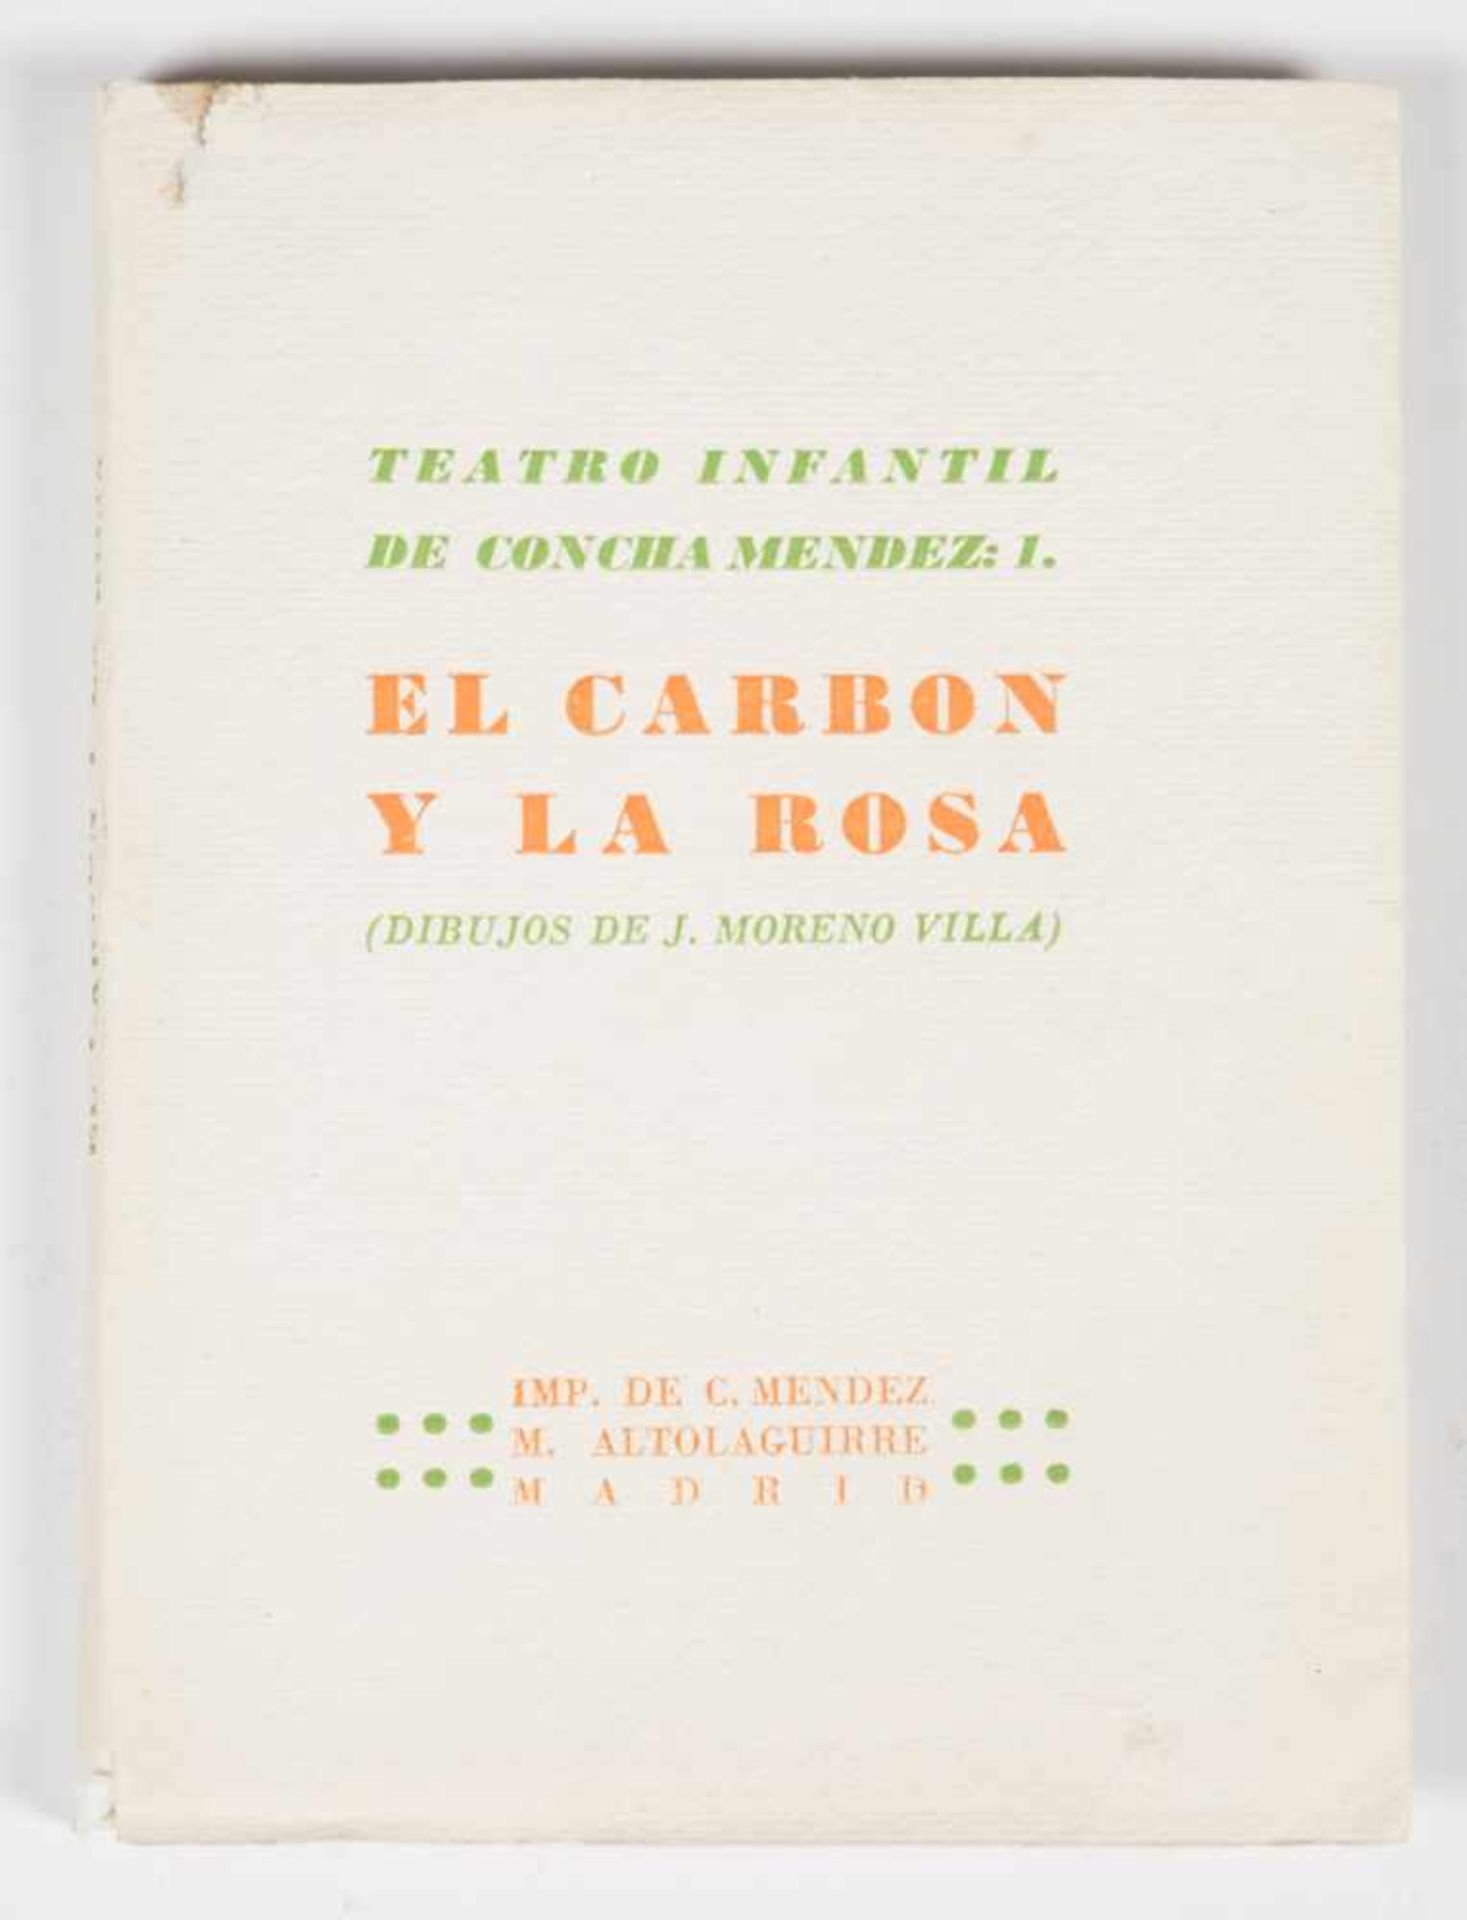 Méndez, Concha; Altolaguirre, Manuel. "El carbón y la rosa". 1st edition. Published by Manuel